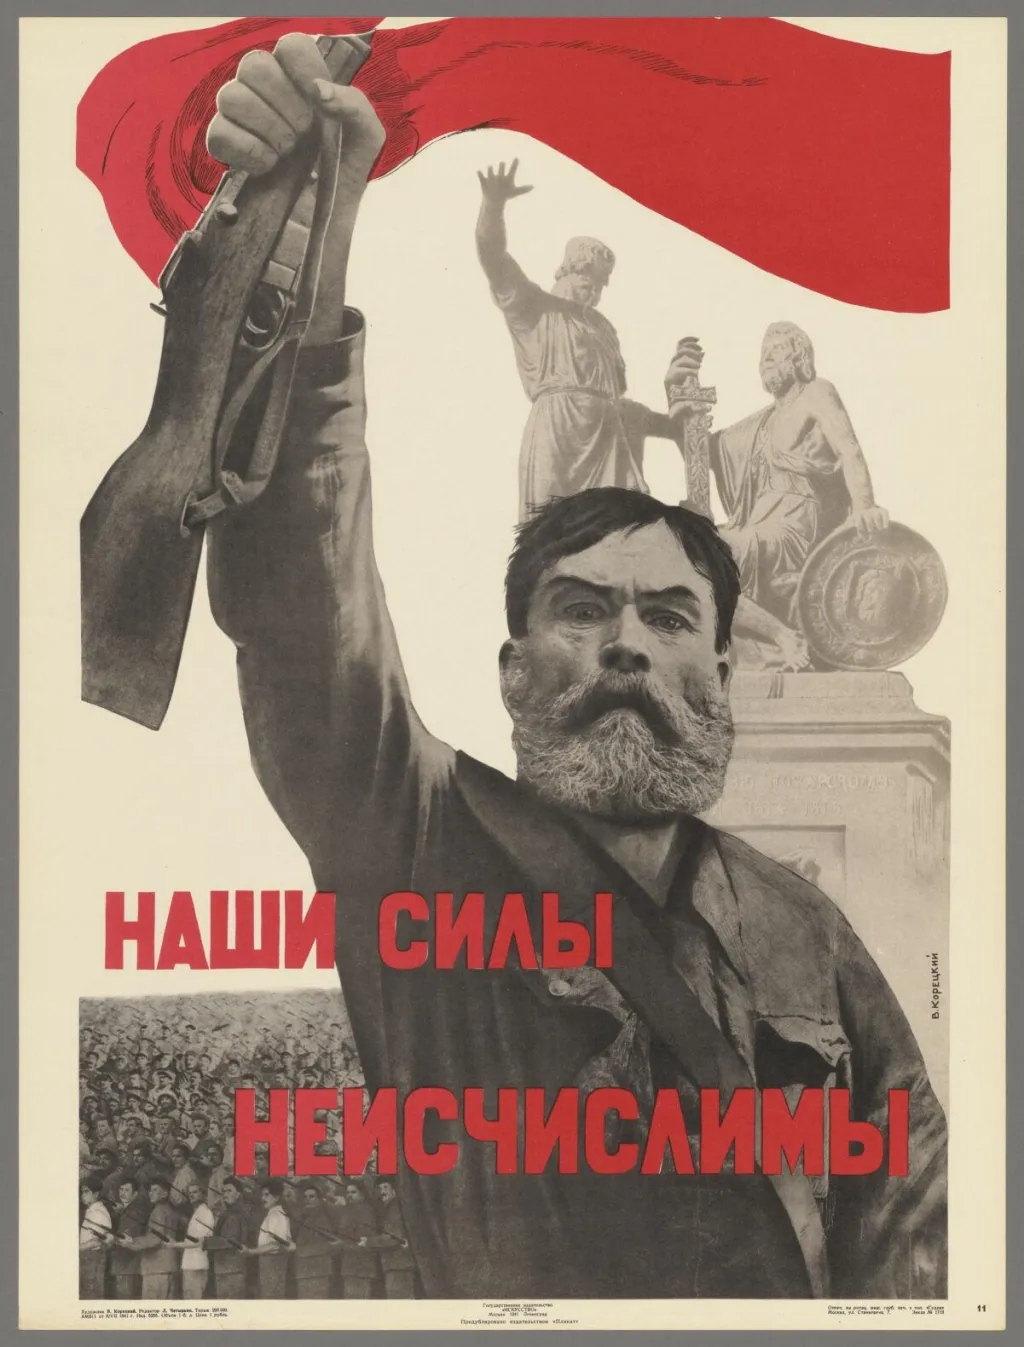 Válečná propagandu zdůrazňuje lidovost odporu sovětského lidu